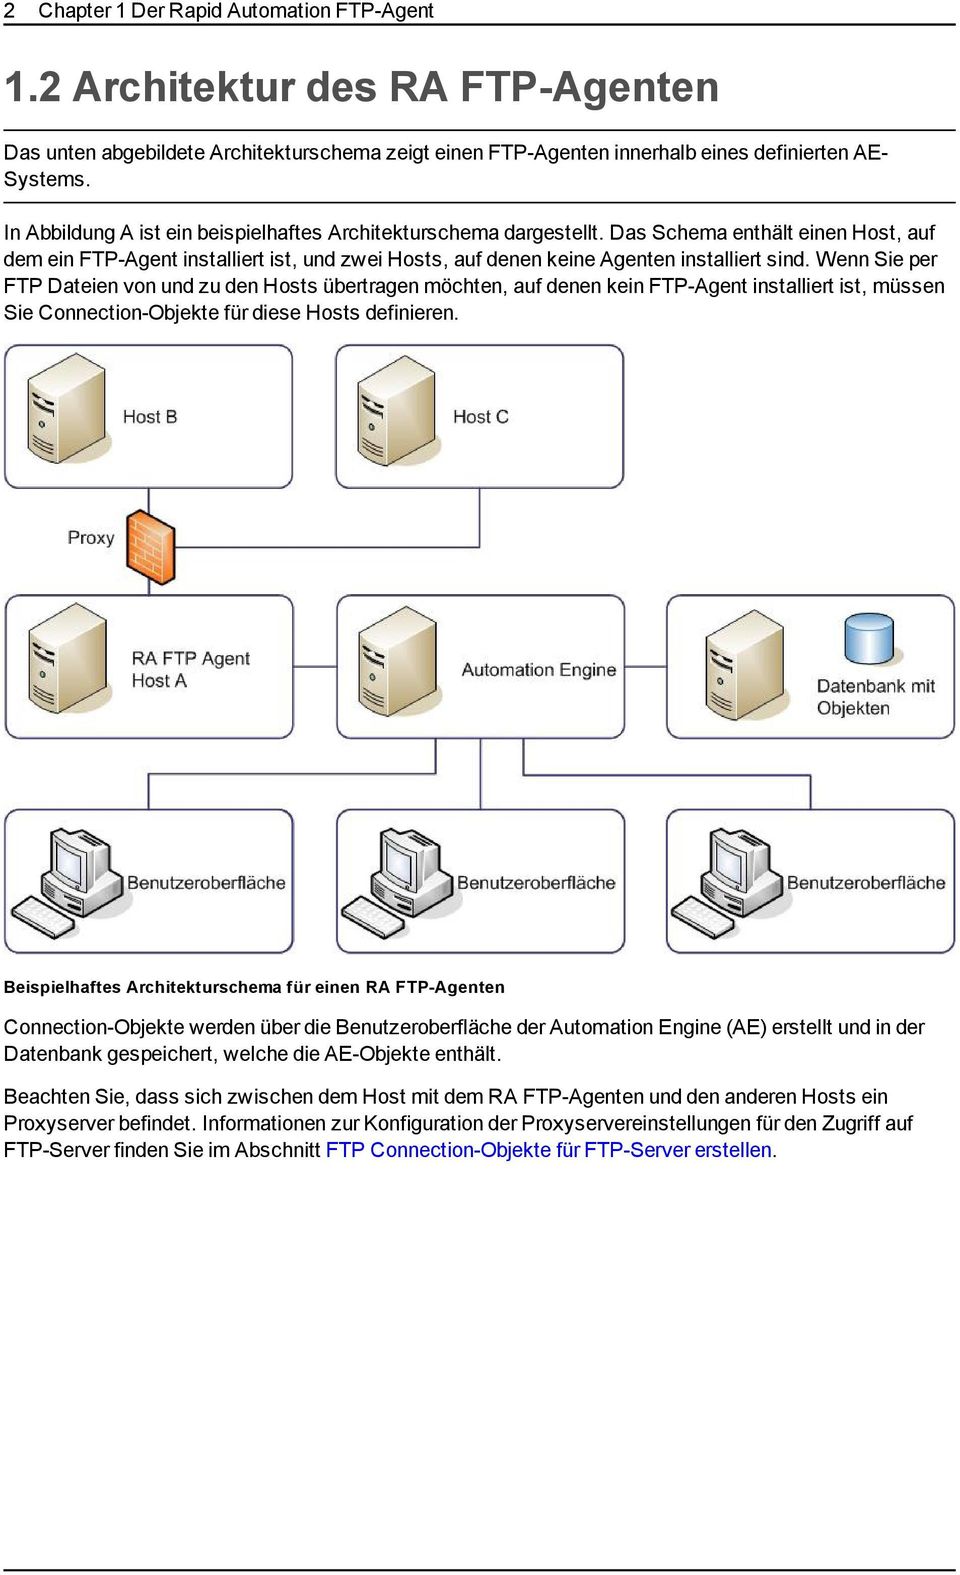 Wenn Sie per FTP Dateien von und zu den Hosts übertragen möchten, auf denen kein FTP-Agent installiert ist, müssen Sie Connection-Objekte für diese Hosts definieren.